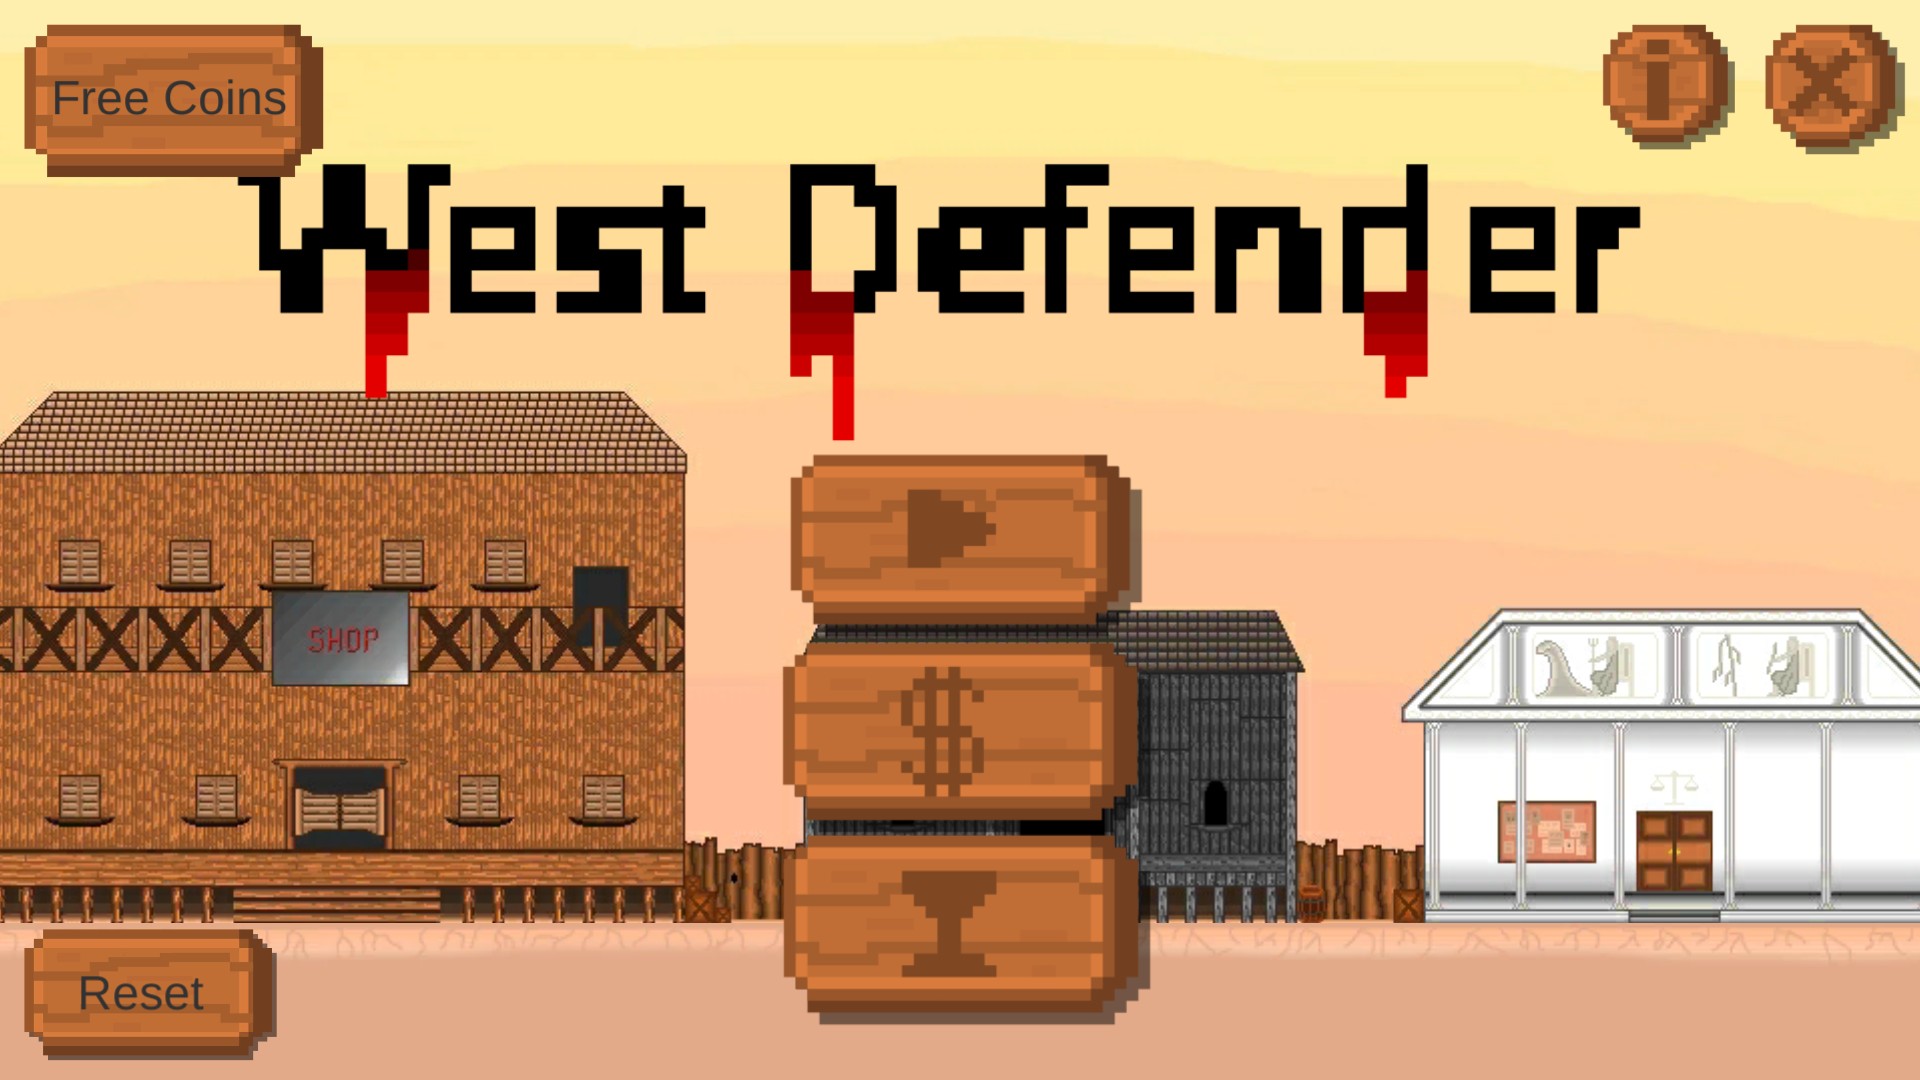 West Defender